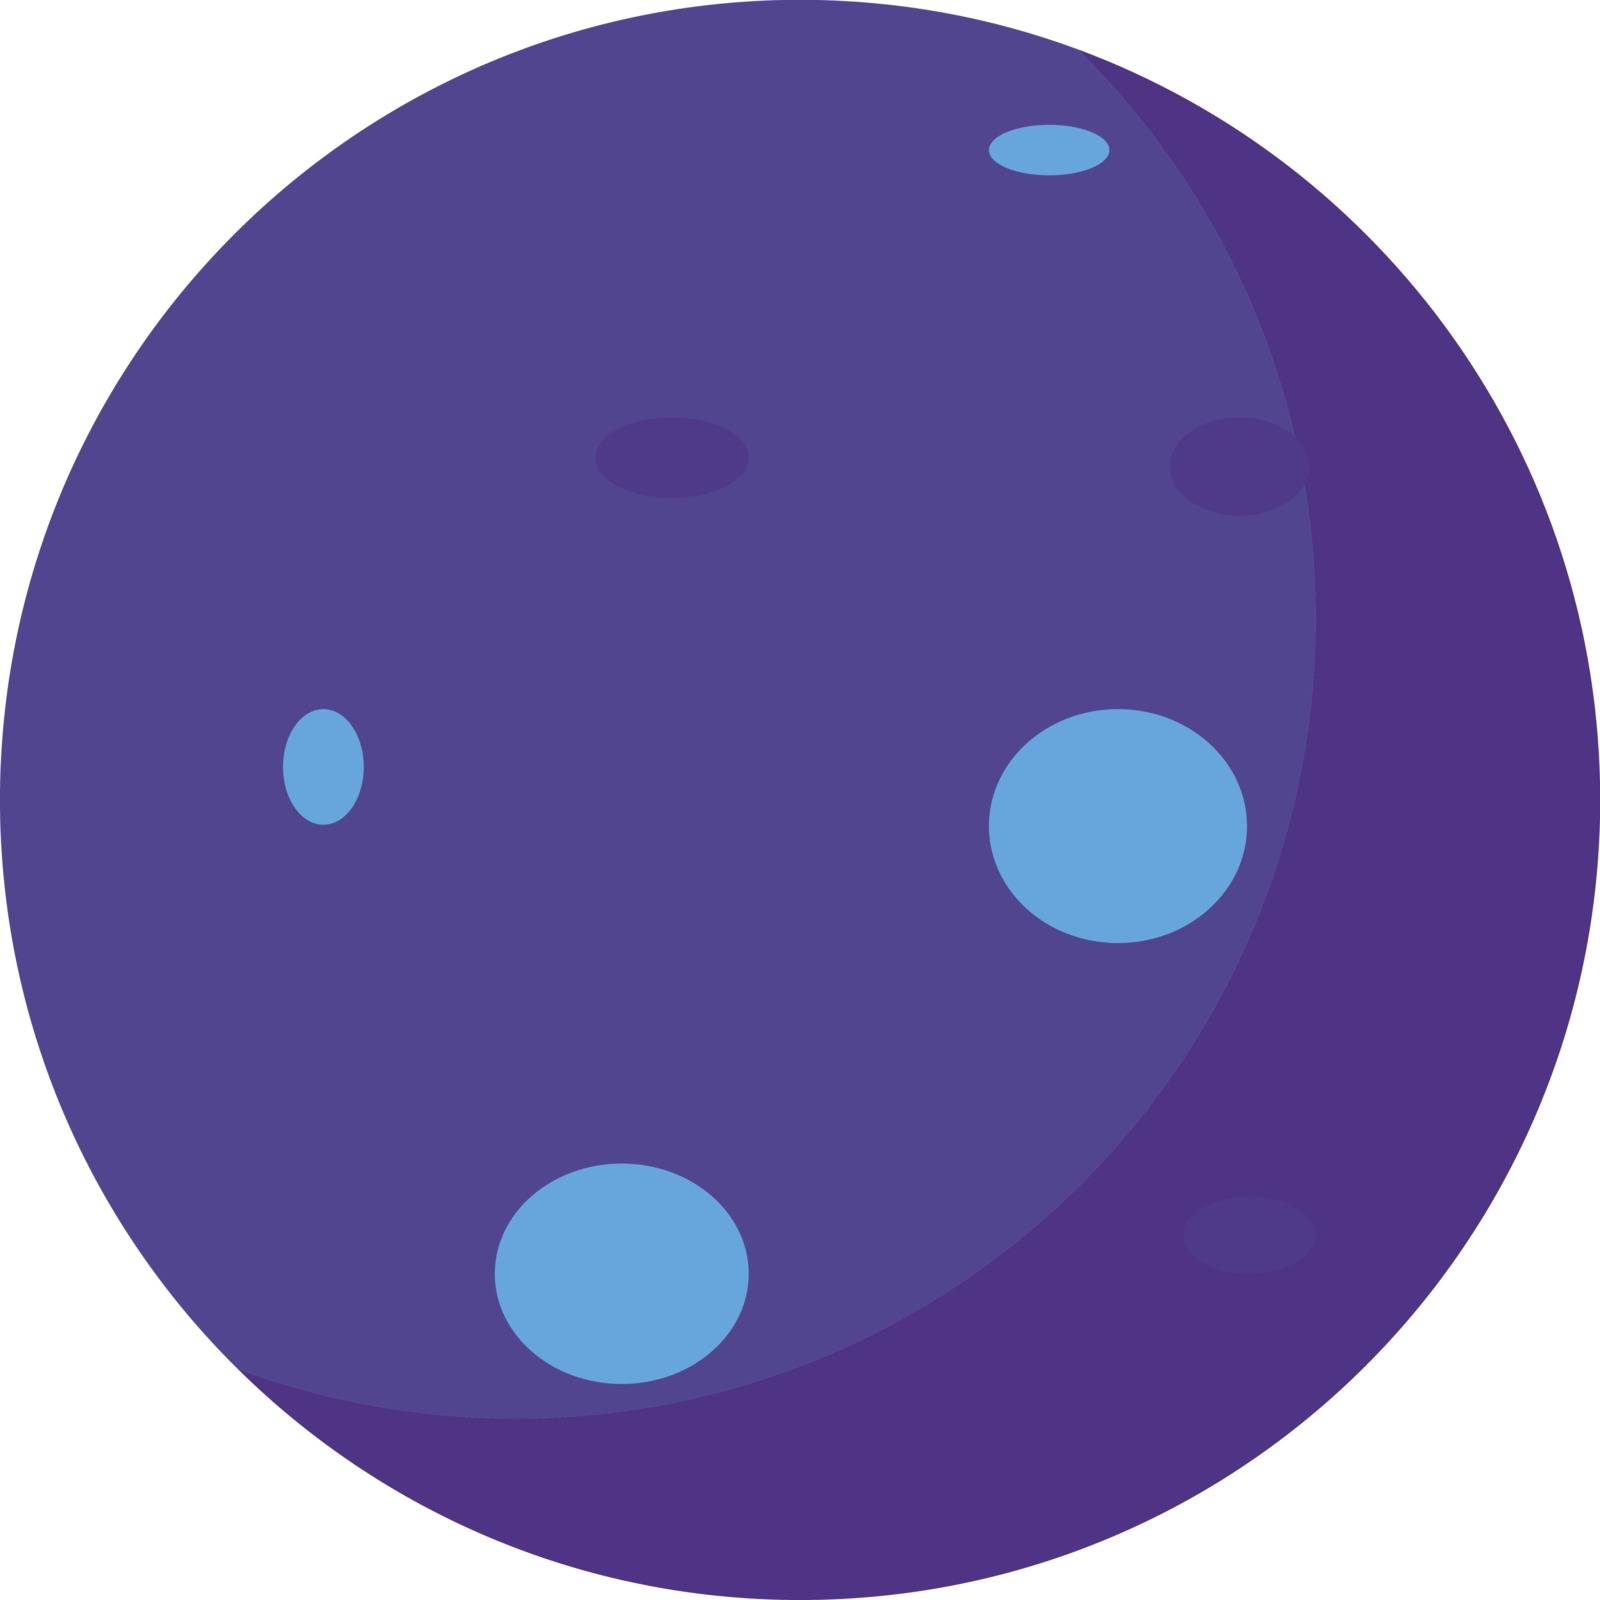 Neptune planet, illustration, vector on white background.